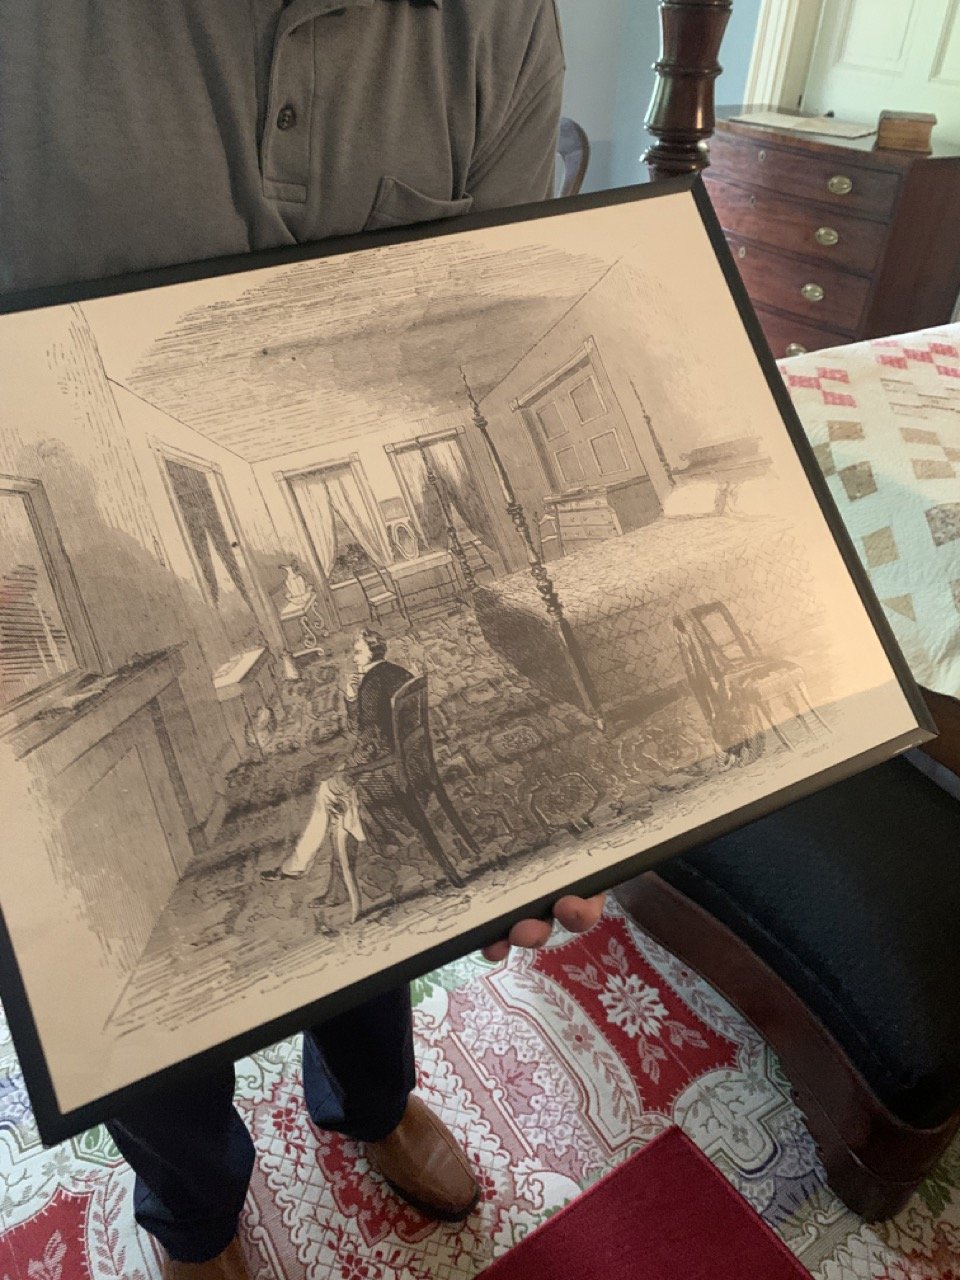 Sketch of Buchanan in his bedroom